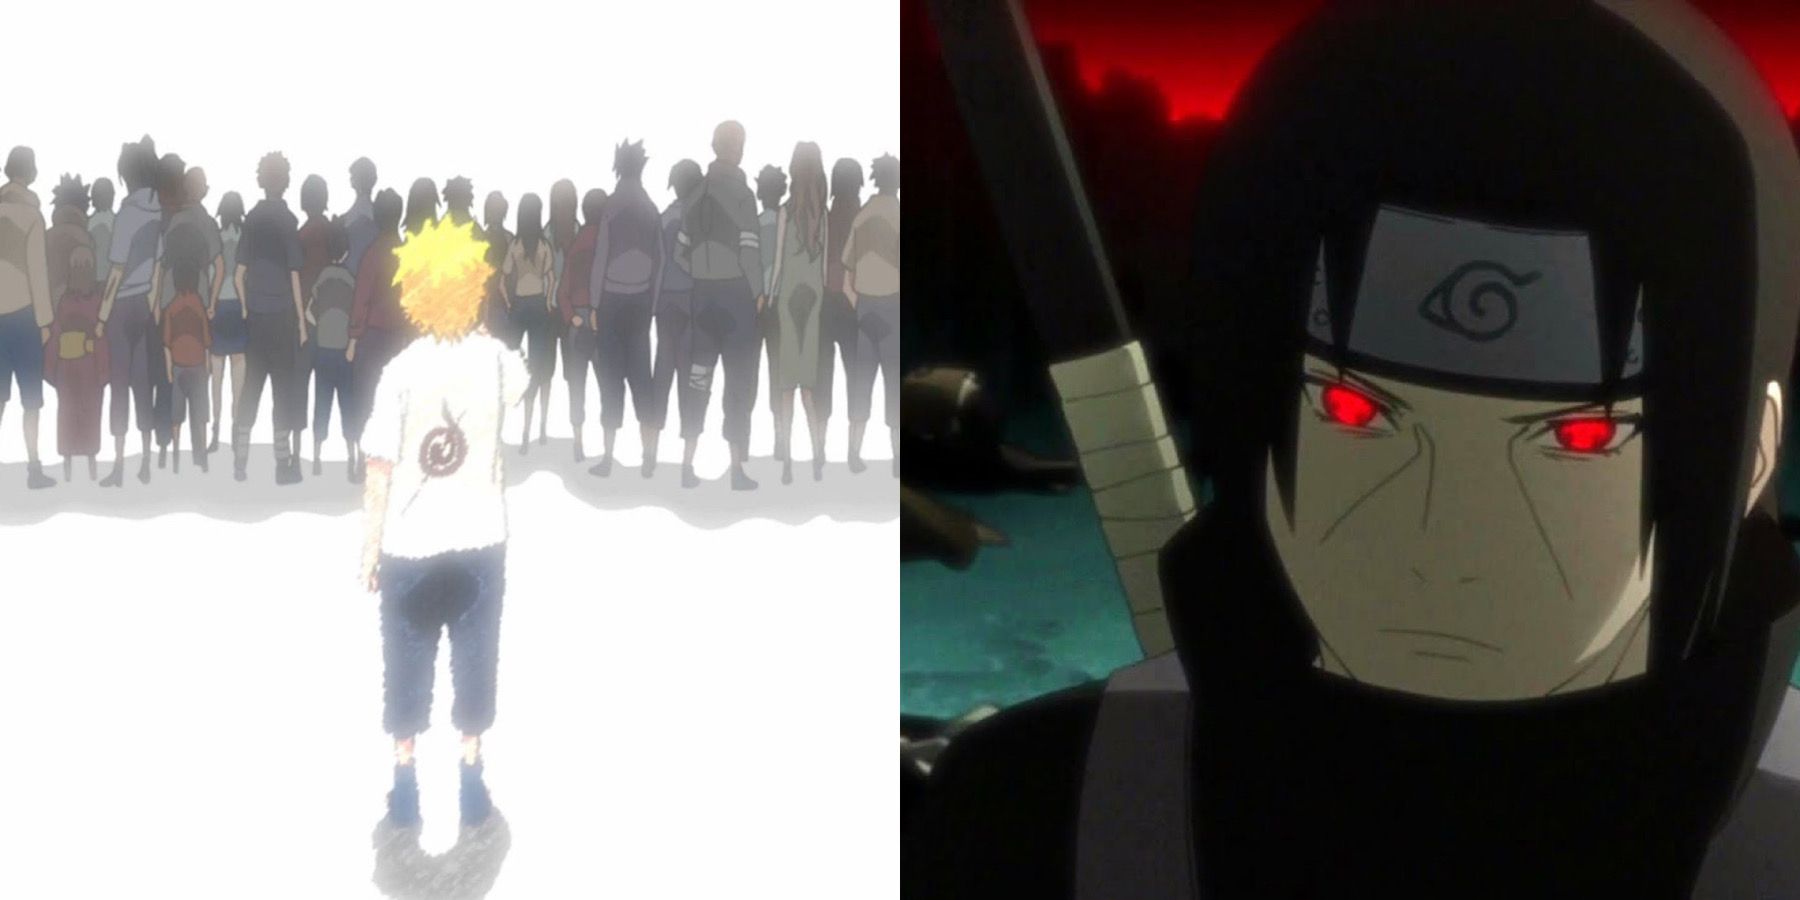 Naruto uzumaki and Itachi uchiha